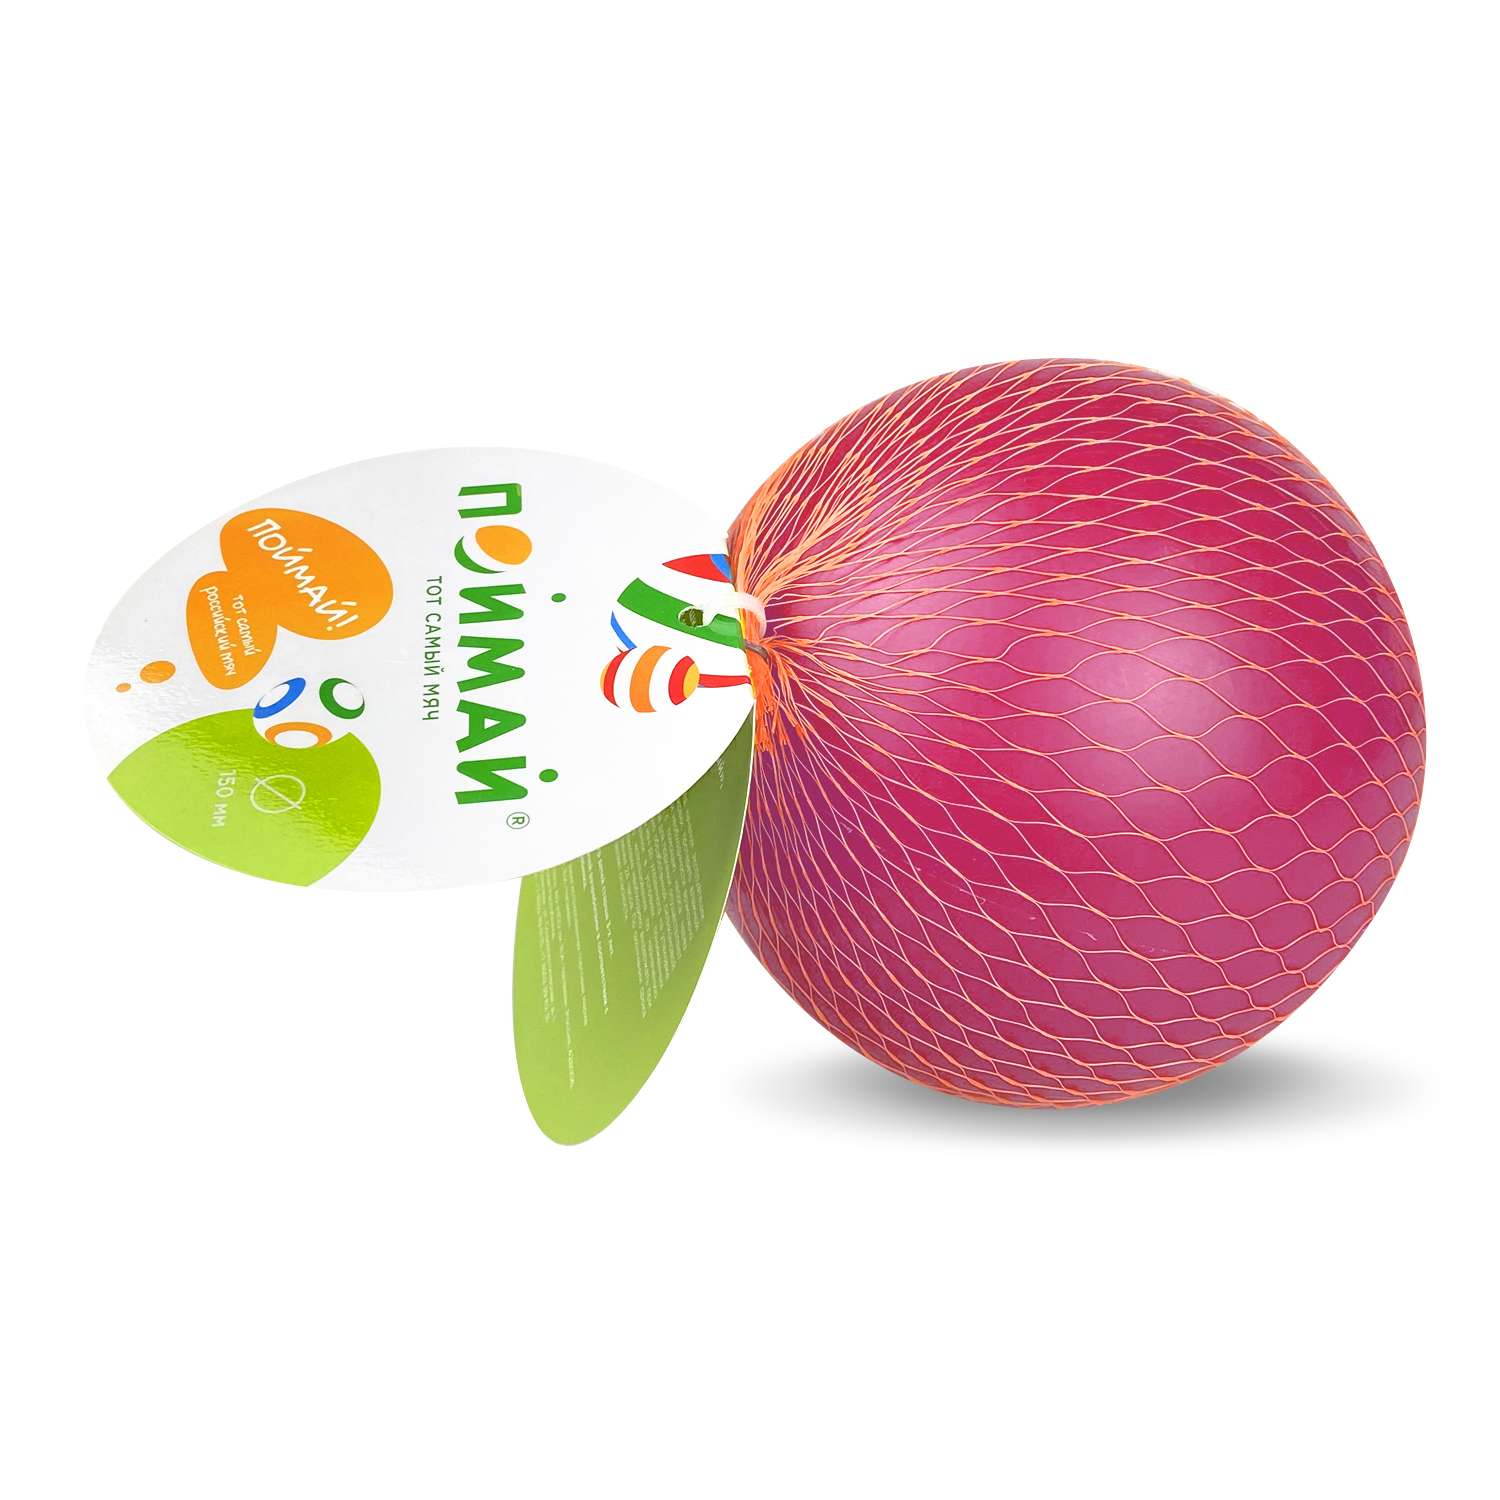 Мяч ПОЙМАЙ диаметр 150мм Радуга розовый - фото 2